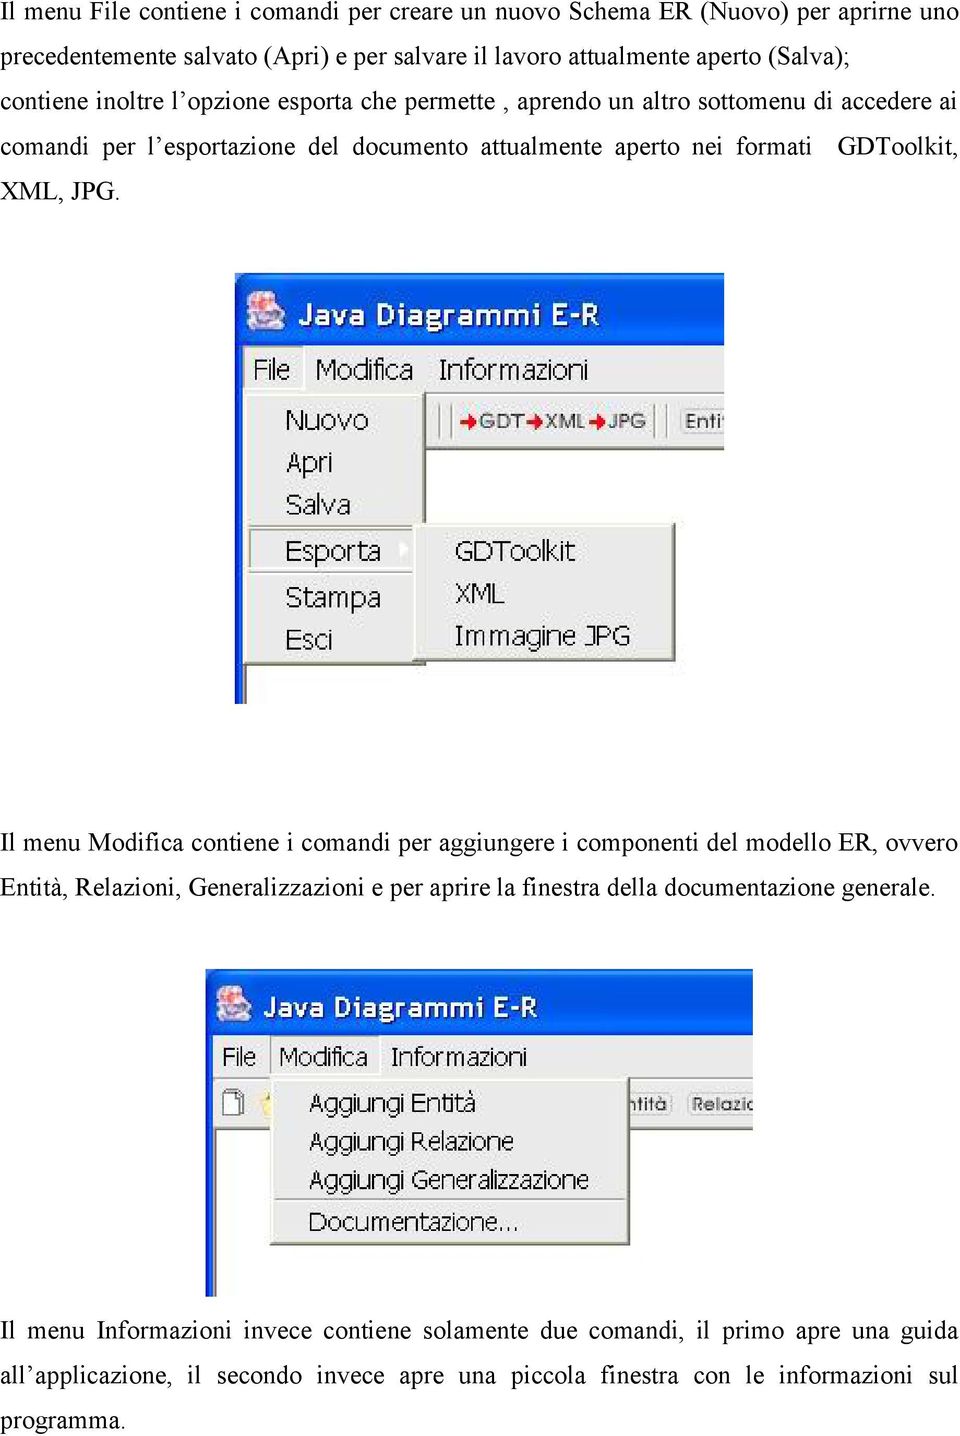 Il menu Modifica contiene i comandi per aggiungere i componenti del modello ER, ovvero Entità, Relazioni, Generalizzazioni e per aprire la finestra della documentazione generale.